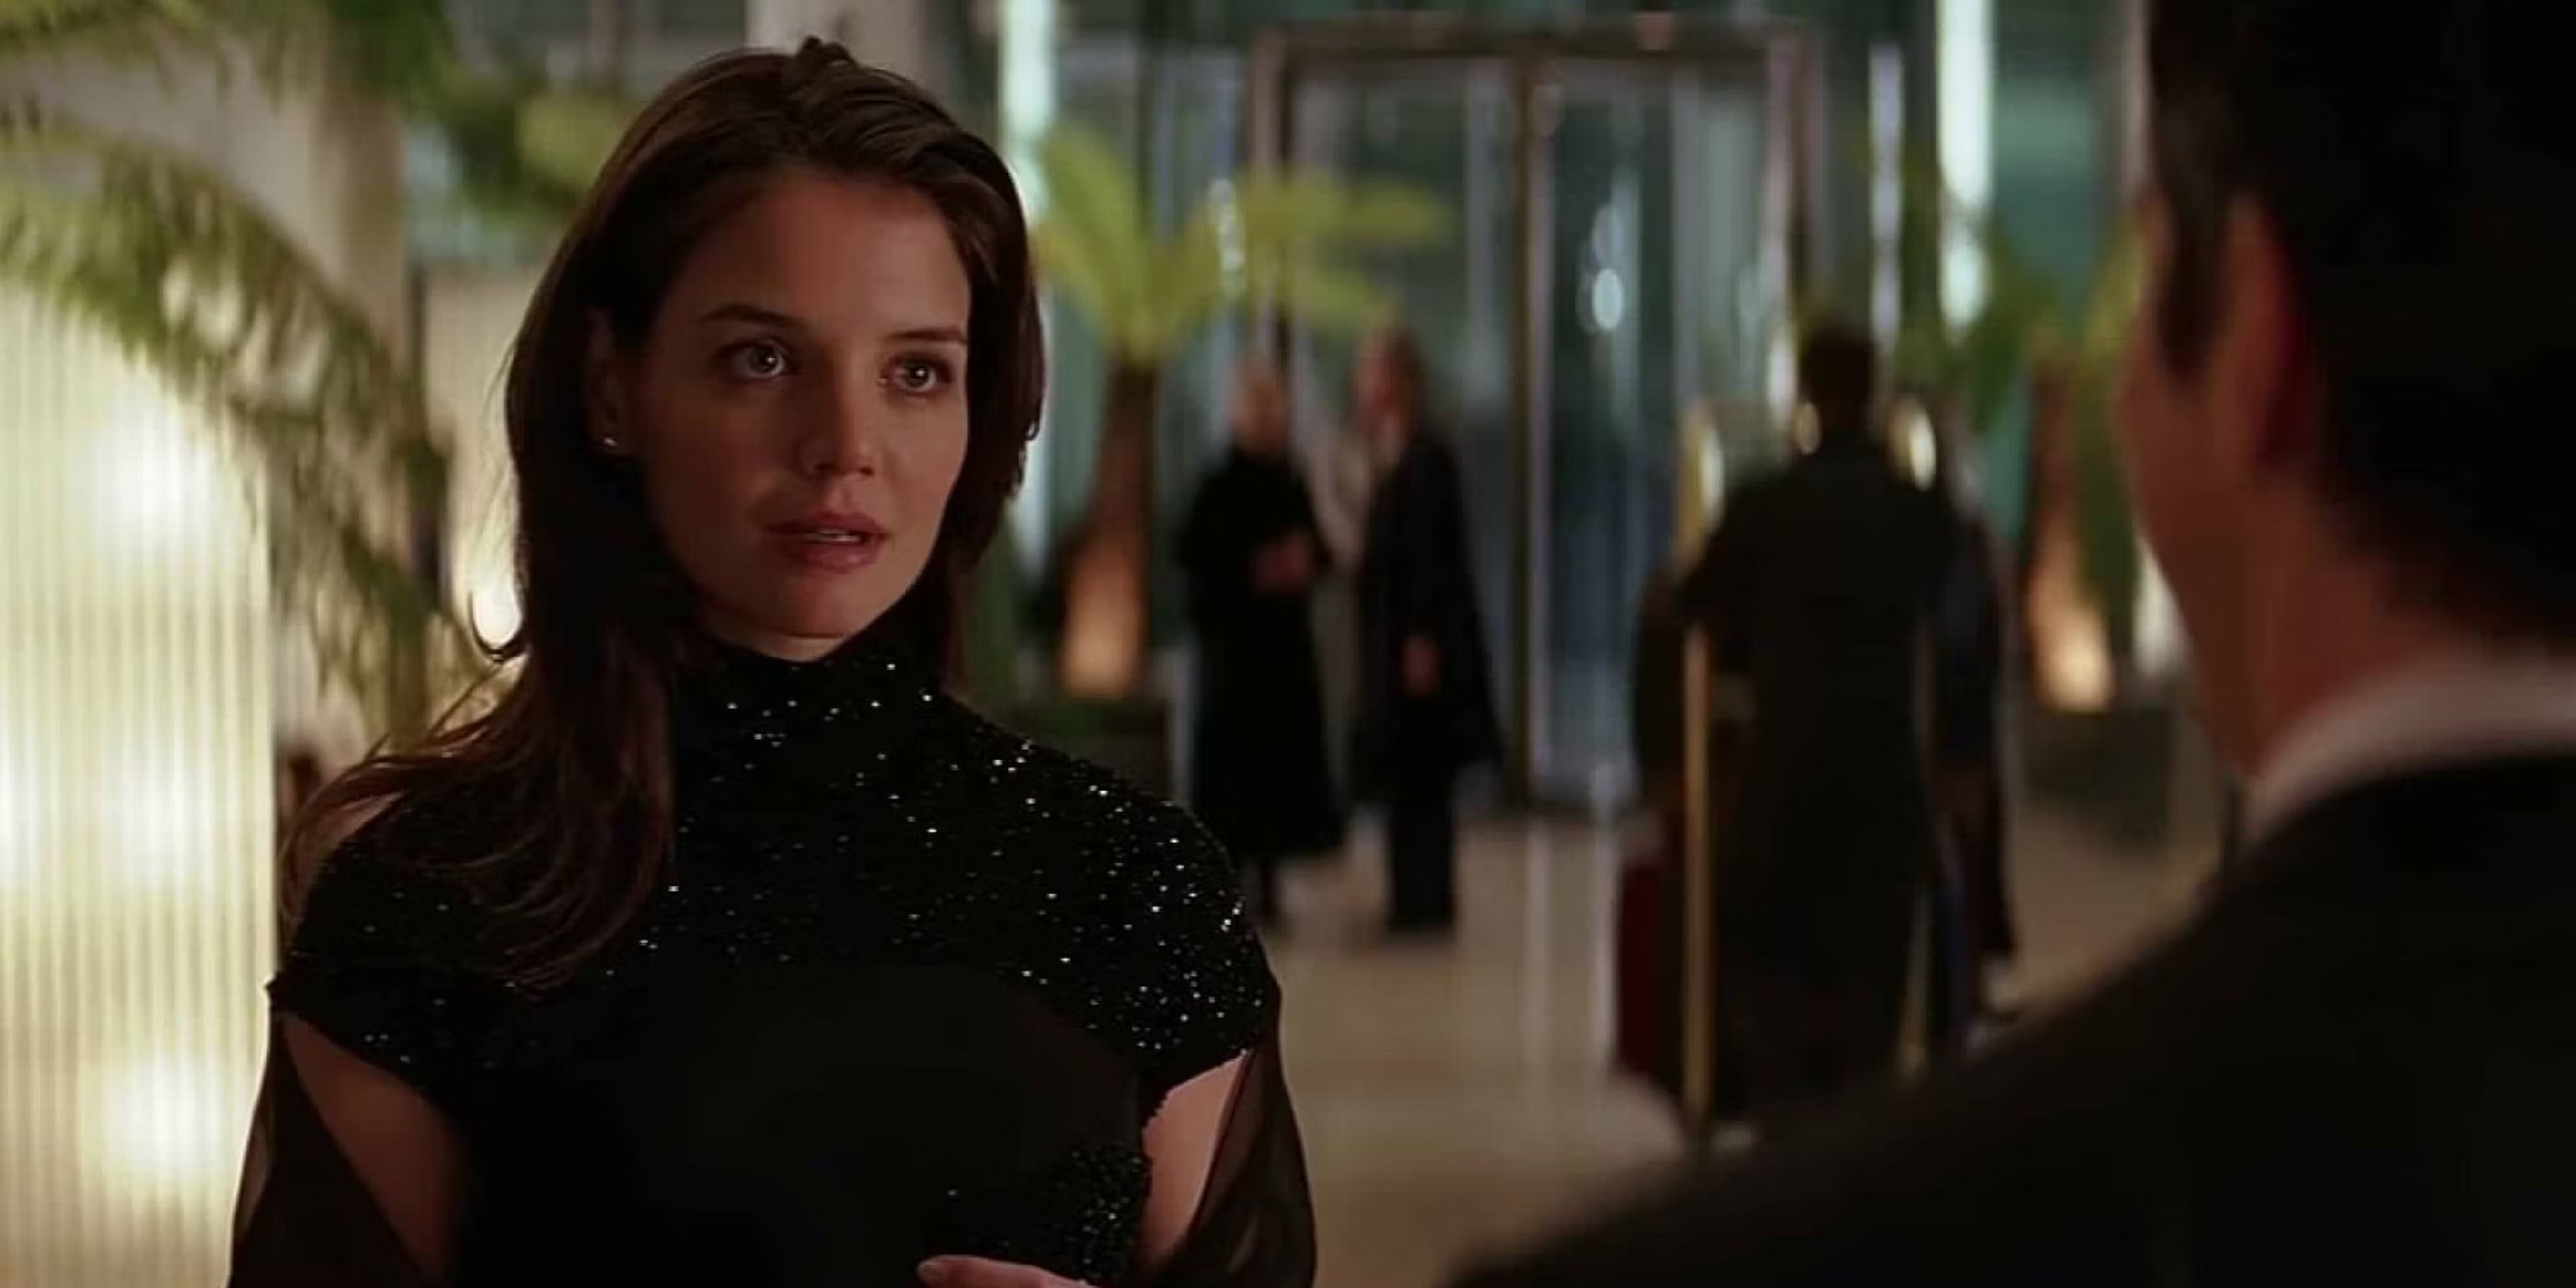 Rachel Dawes (Katie Holmes) es posa amb un vestit brillant en un esdeveniment elegant mentre s'enfronta a Bruce Wayne sobre les seves accions a 'Batman Begins' (2005).